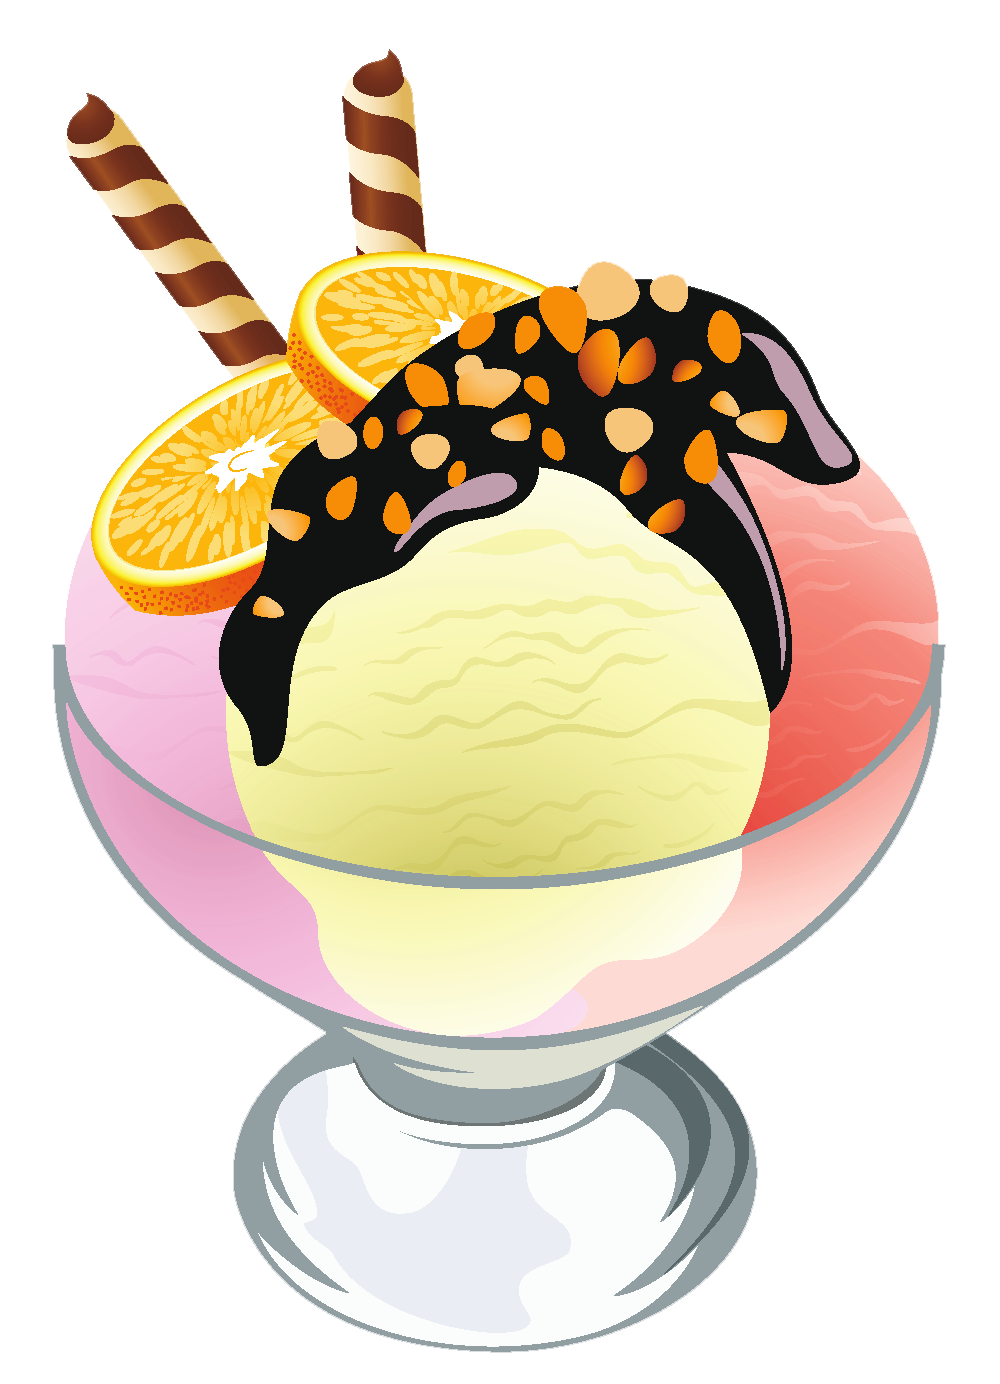 Ice cream sundae clipart 6